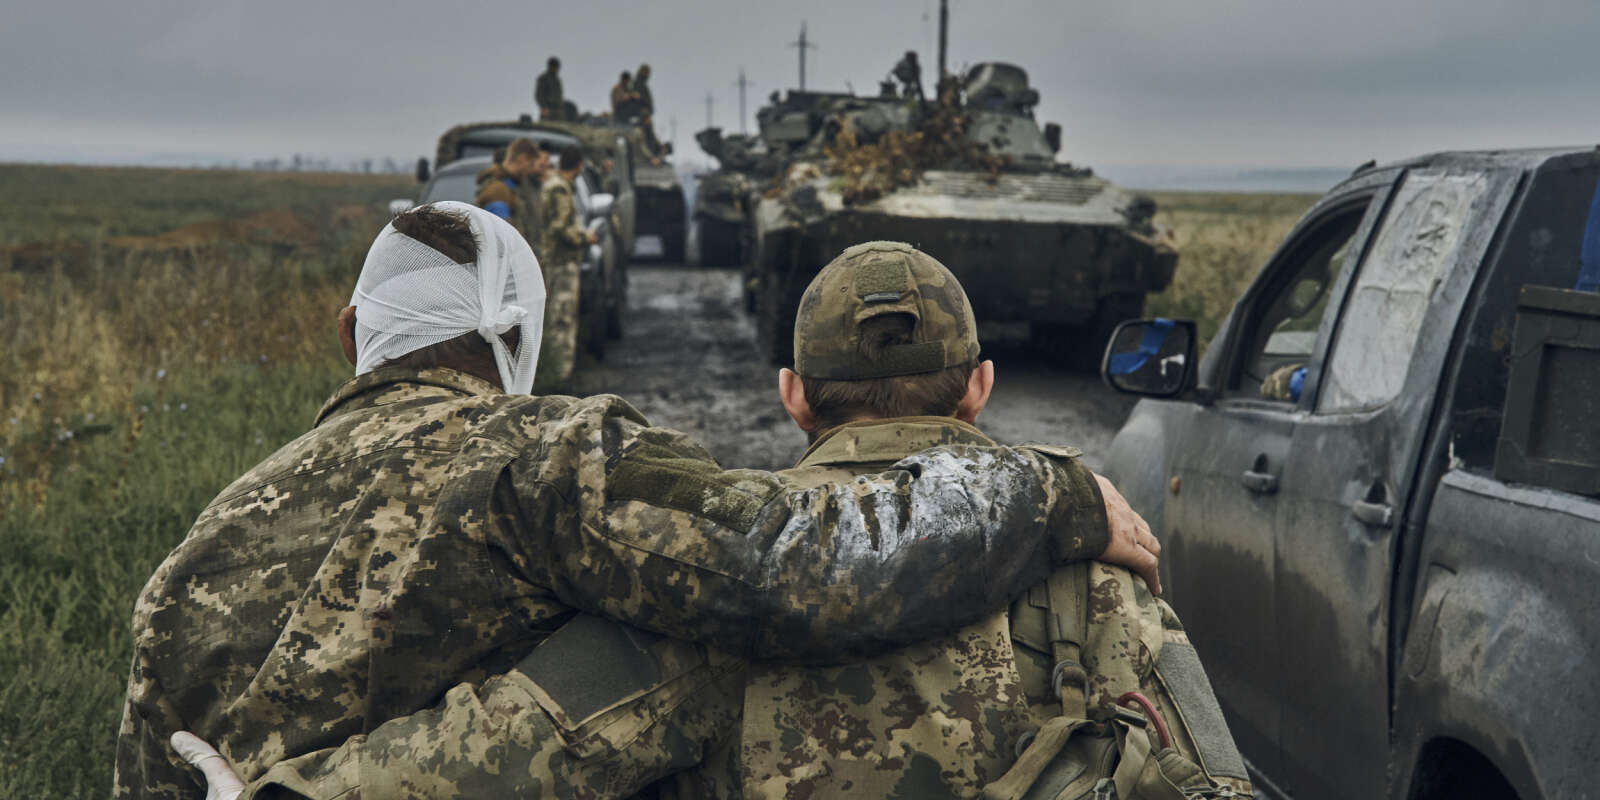 Un soldat ukrainien vient en aide à un camarade blessé sur la route dans le territoire libéré de la région de Kharkiv, en Ukraine, le lundi 1er septembre 2019.